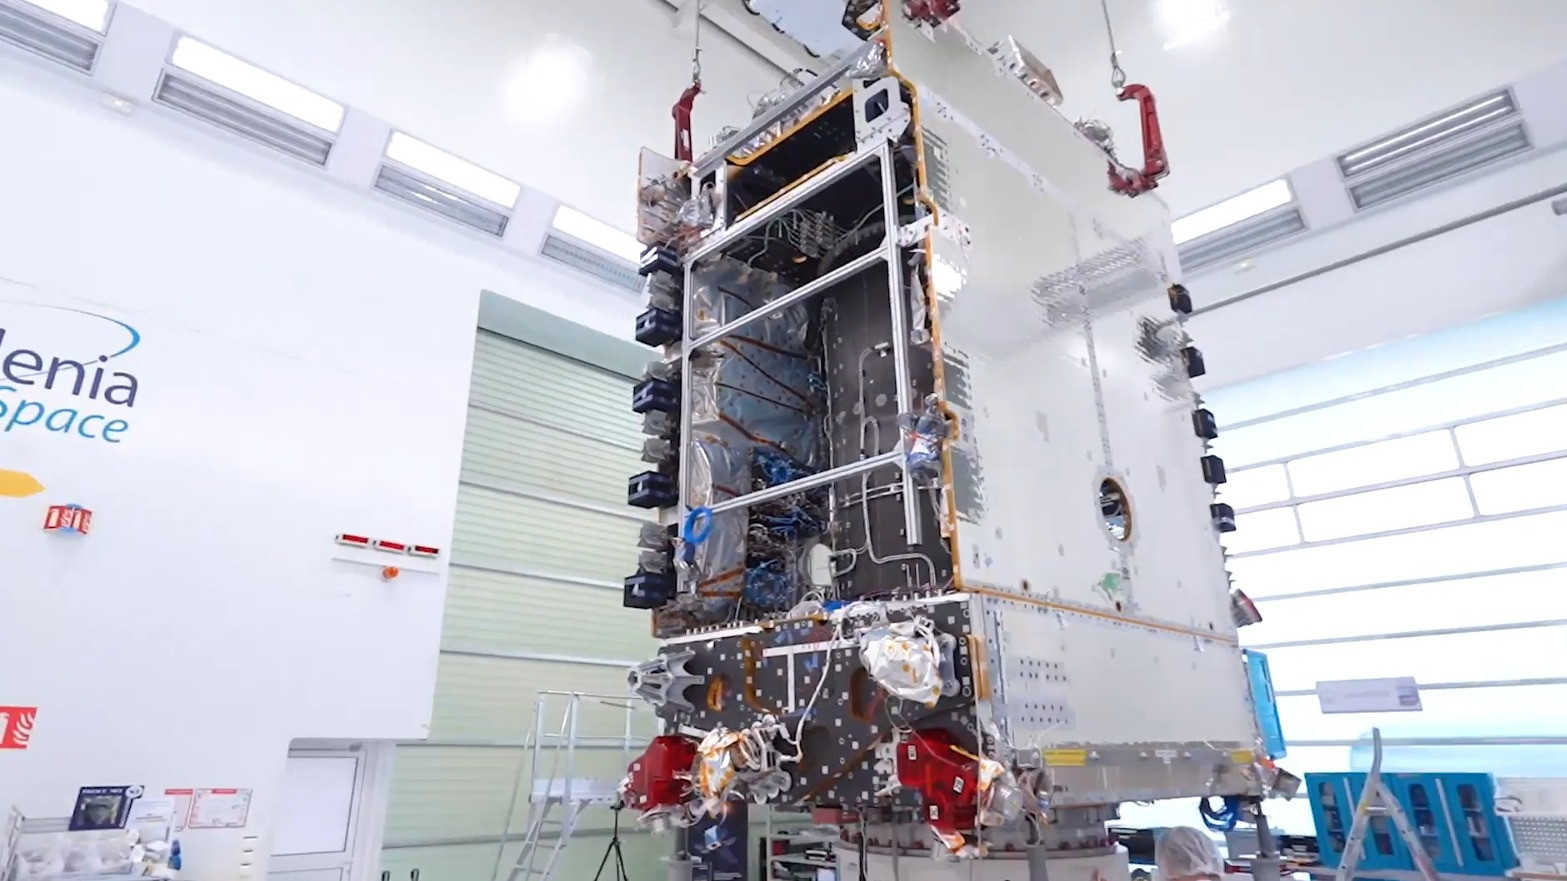 Ditenagai oleh platform mutakhir Spacebus 4000B2 dan memiliki masa pakai desain selama 15 tahun, satelit ini merupakan hasil kerja sama Thales Alenia Space dalam hal pabrikasi dan fasilitasi peluncuran yang mulus oleh SpaceX